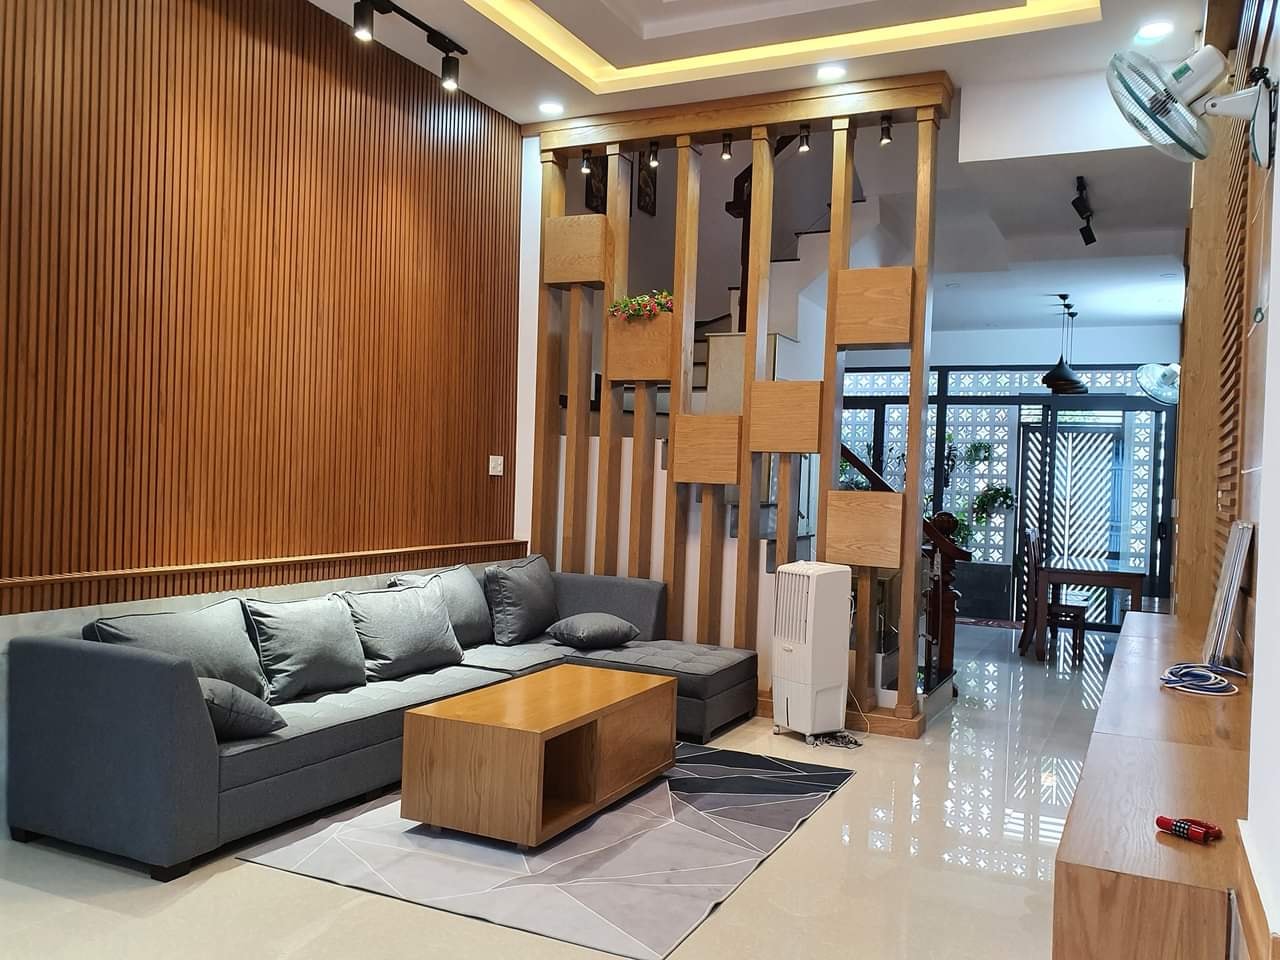 Thiết kế nội thất nhà phố đẹp tại Quảng Ninh 2